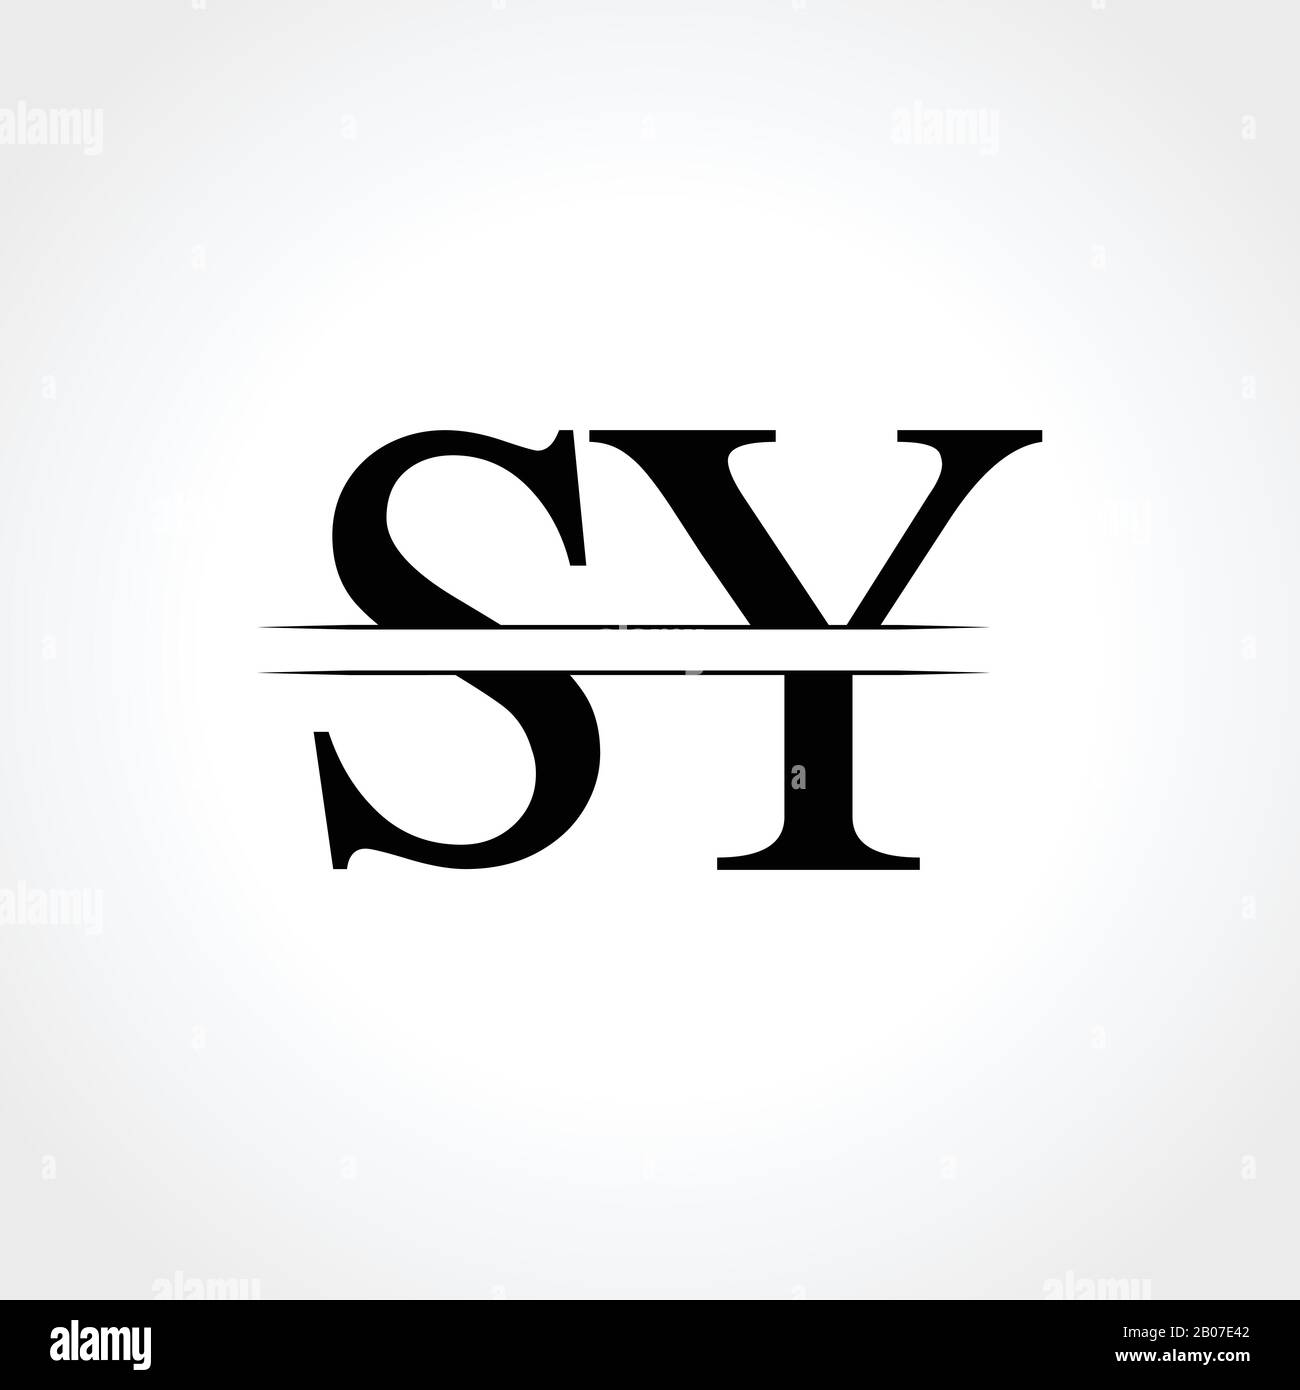 SY [Blu-ray]